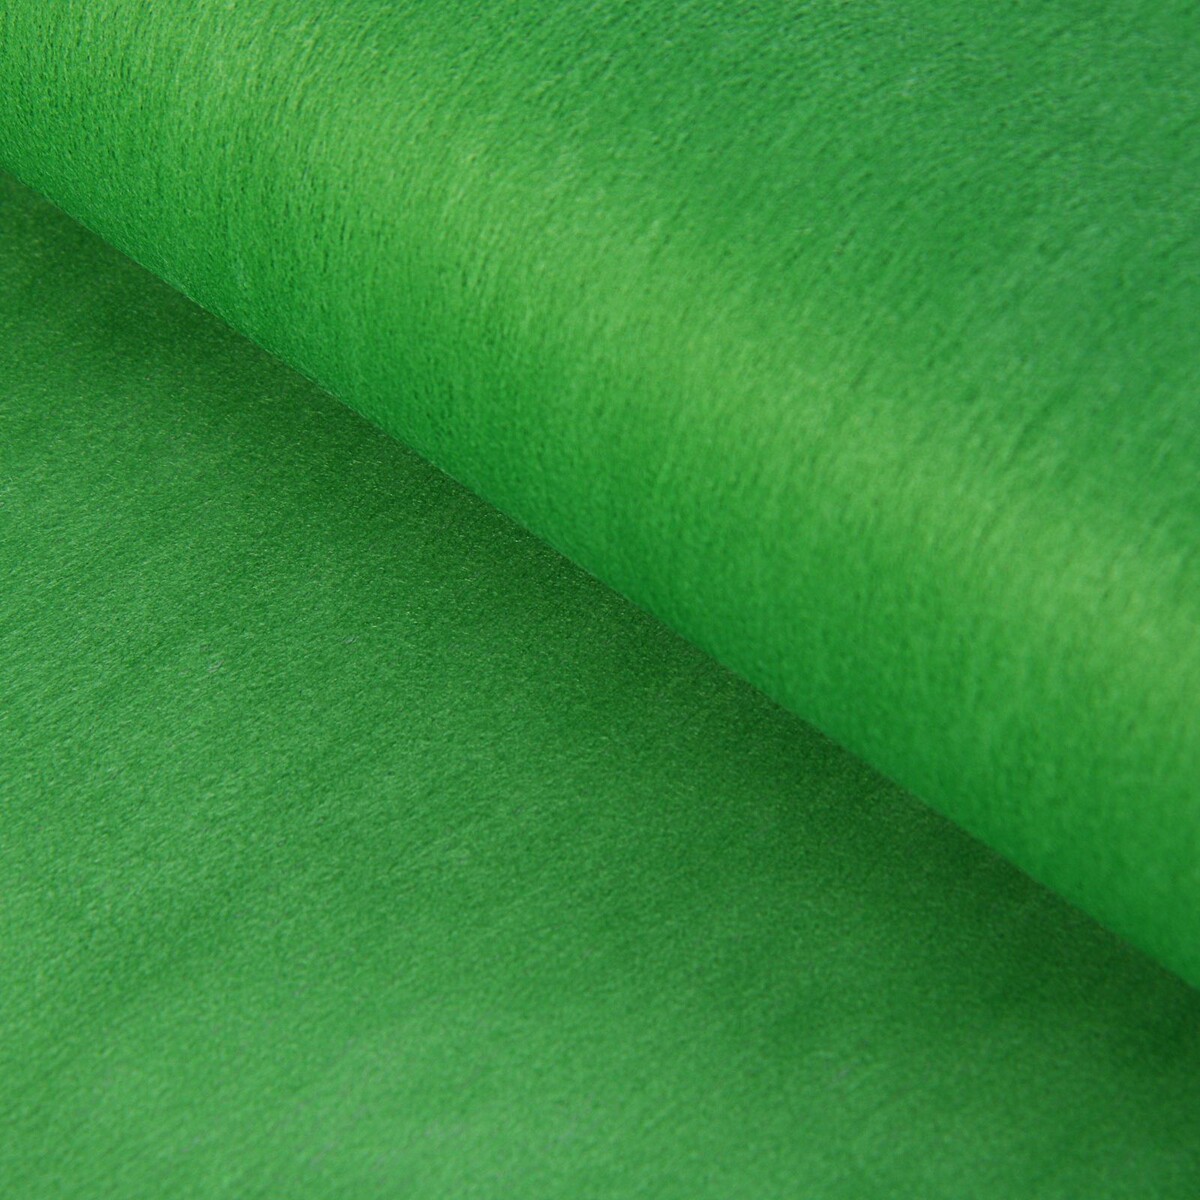 Фетр однотонный, зеленый, 50 см x 15 м фетр для упаковок и поделок однотонный салатовый зеленый двусторонний рулон 1шт 0 5 x 20 м